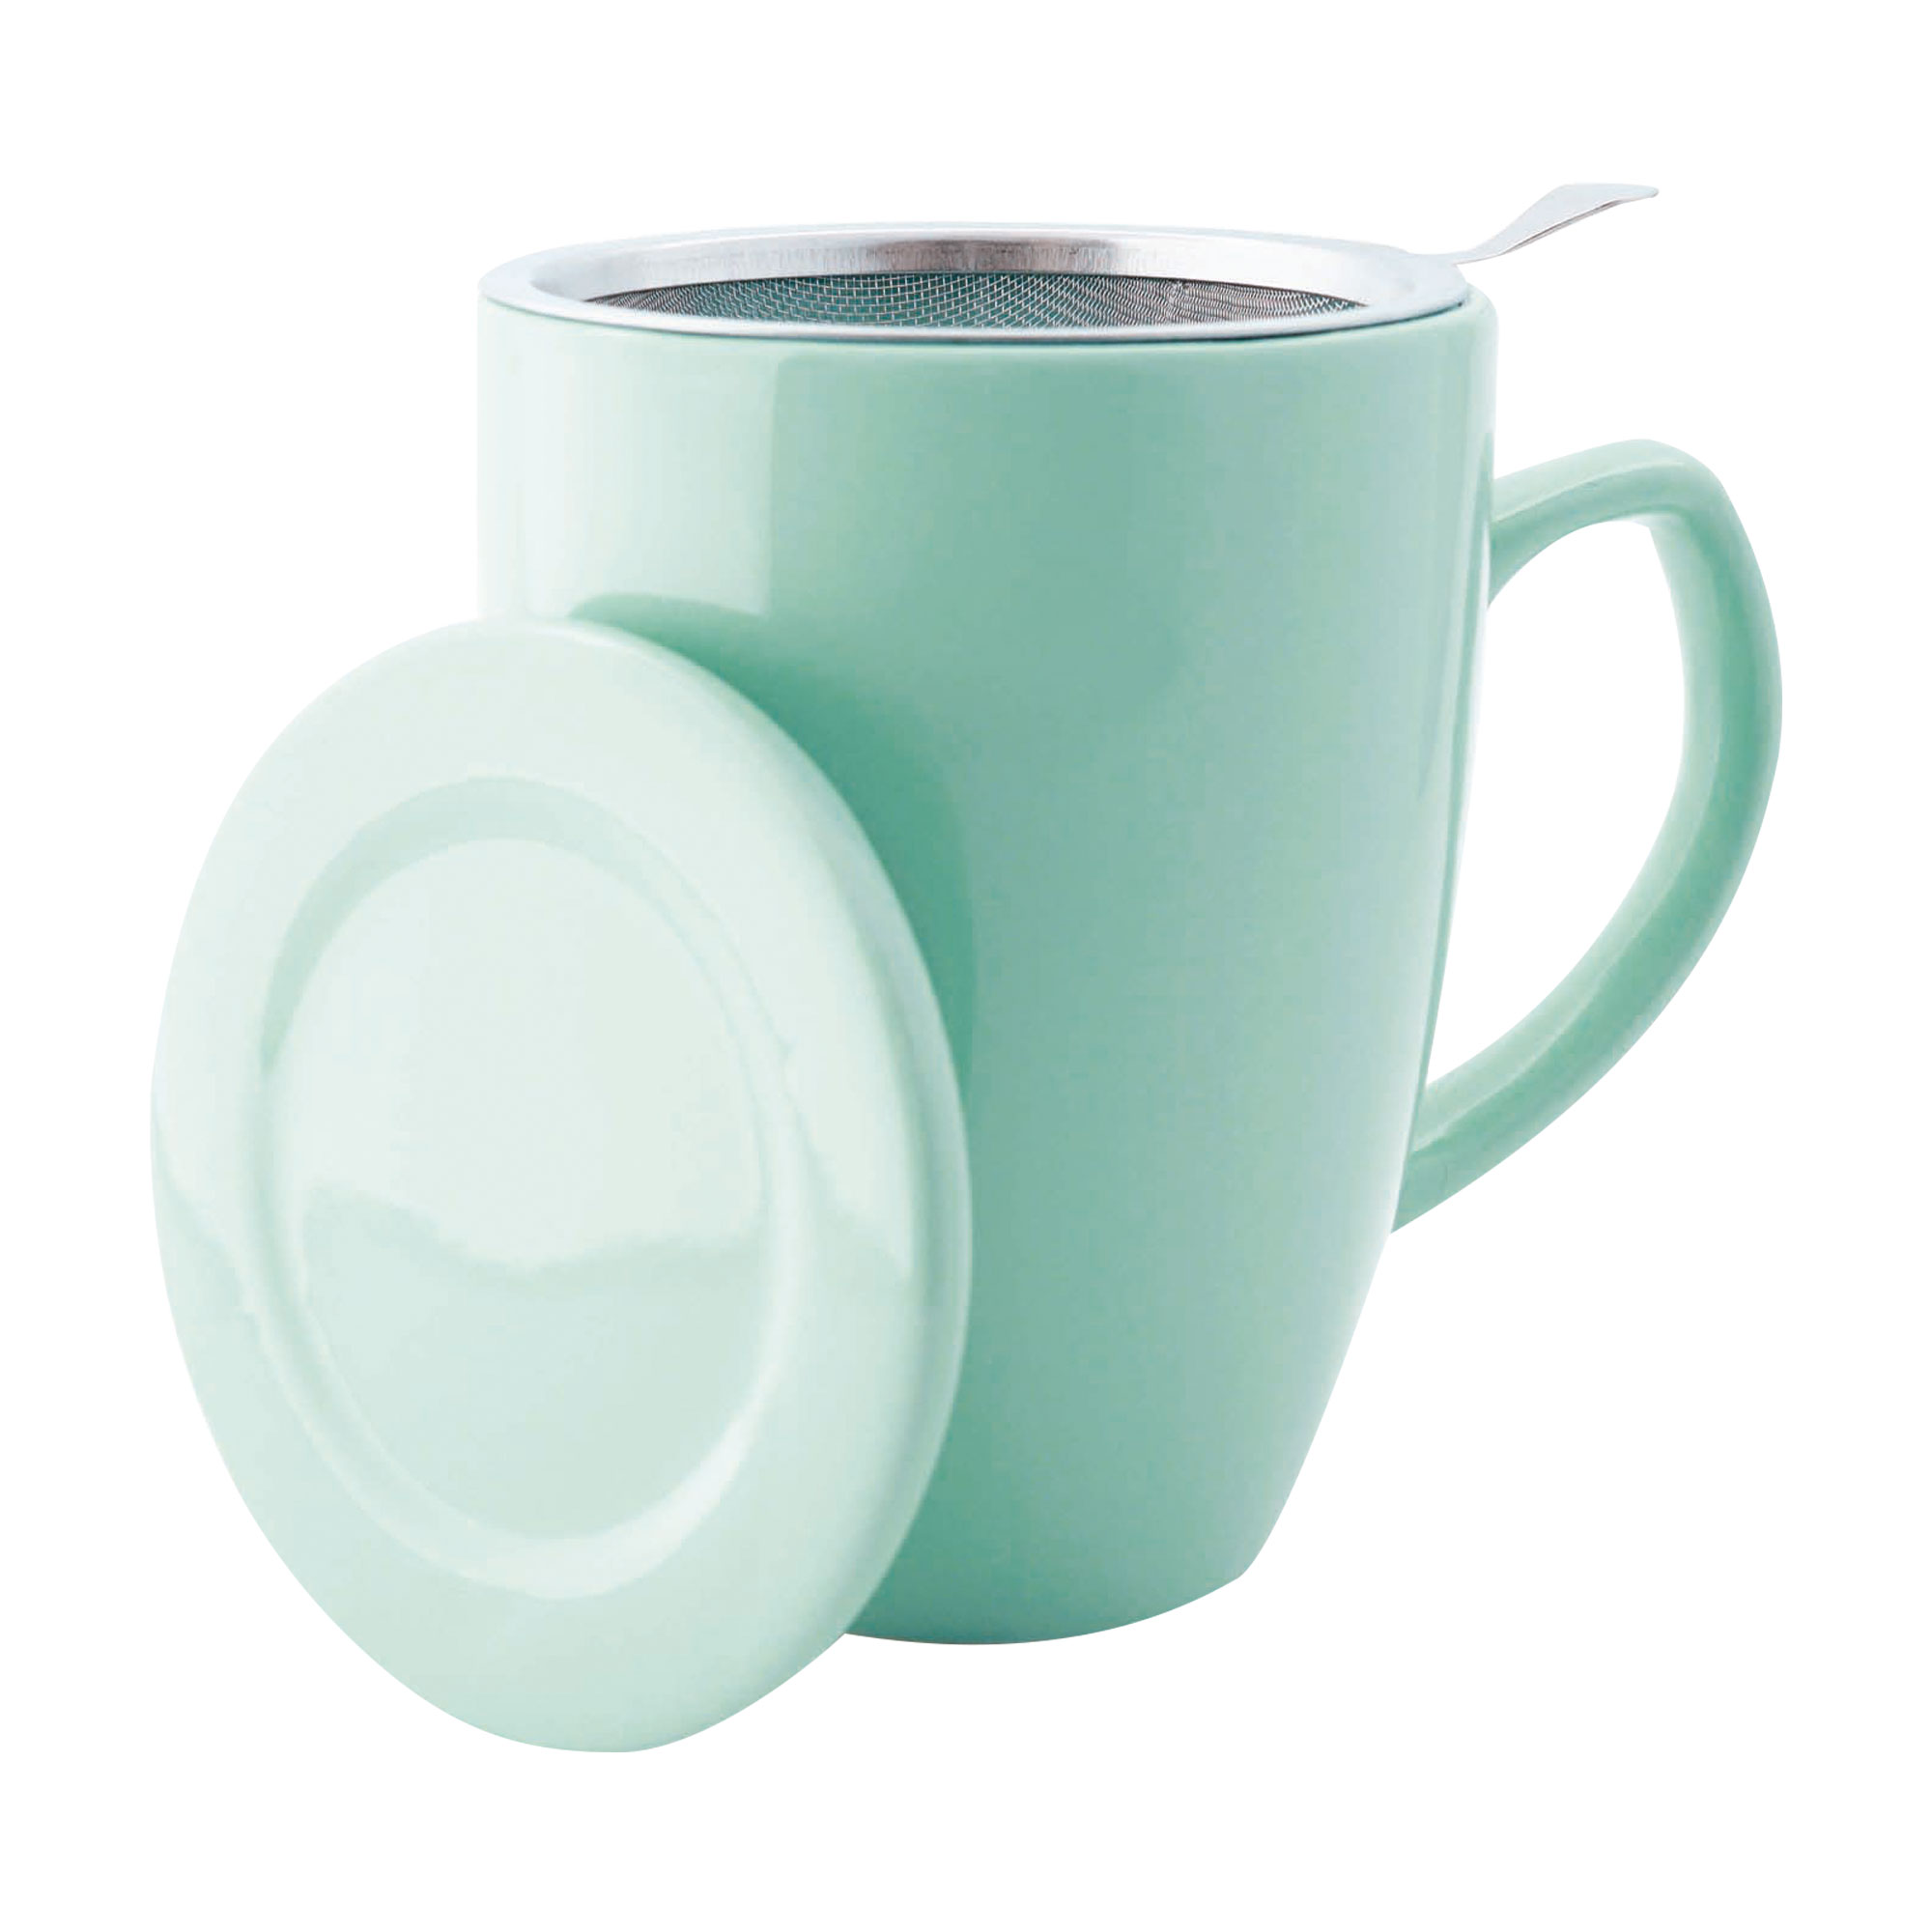 Teetasse mit Siebeinsatz und Deckel. Farbe: mintgrün. Mit 0,35 Liter Fassungsvermögen.